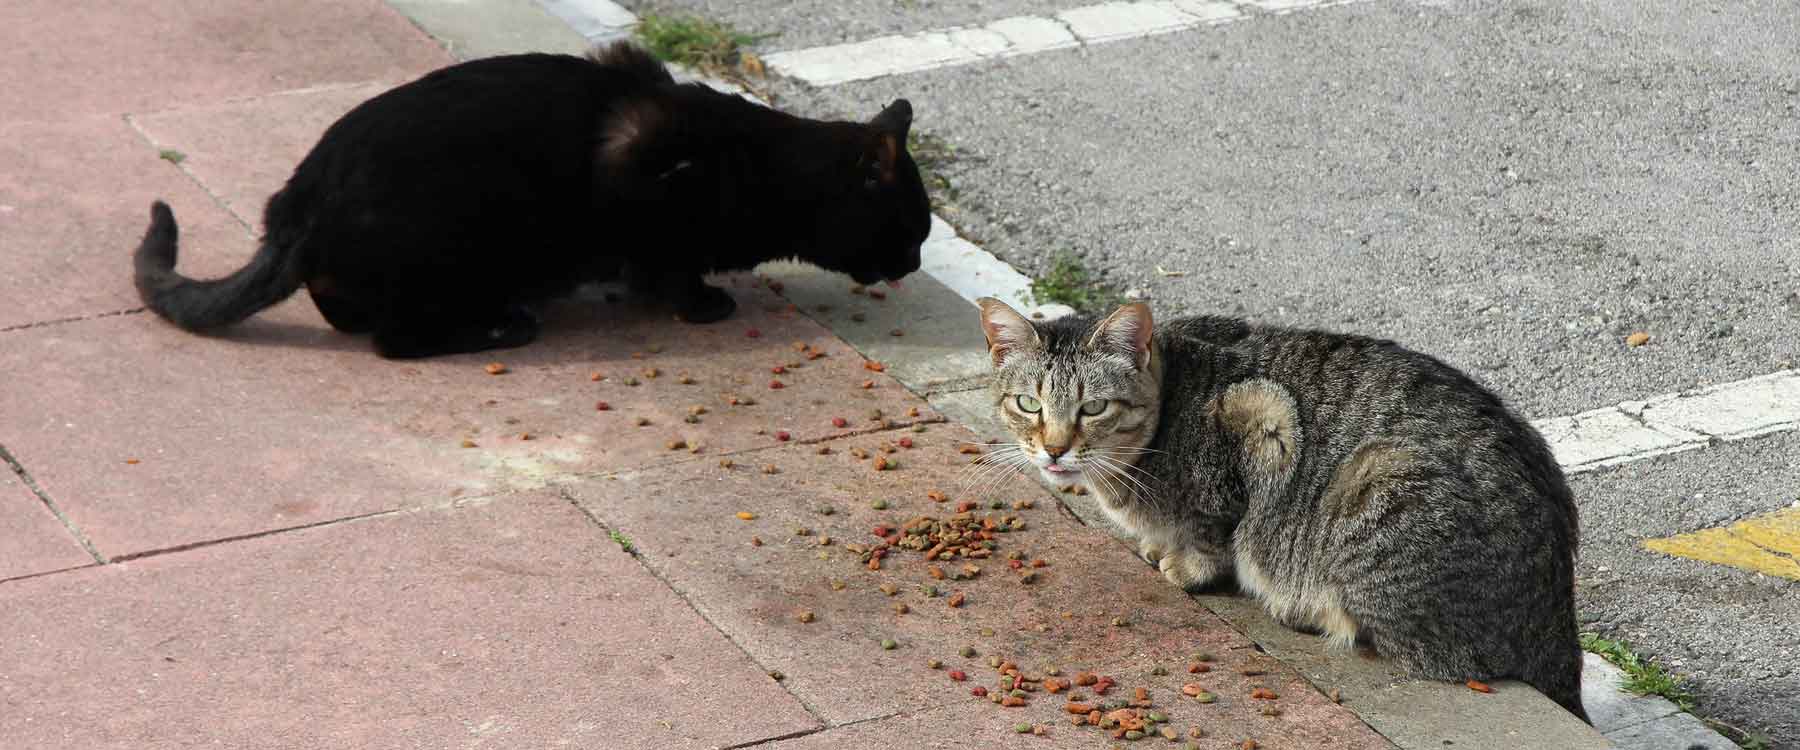 Zwei Streuner Katzen auf der Straße beim Essen.